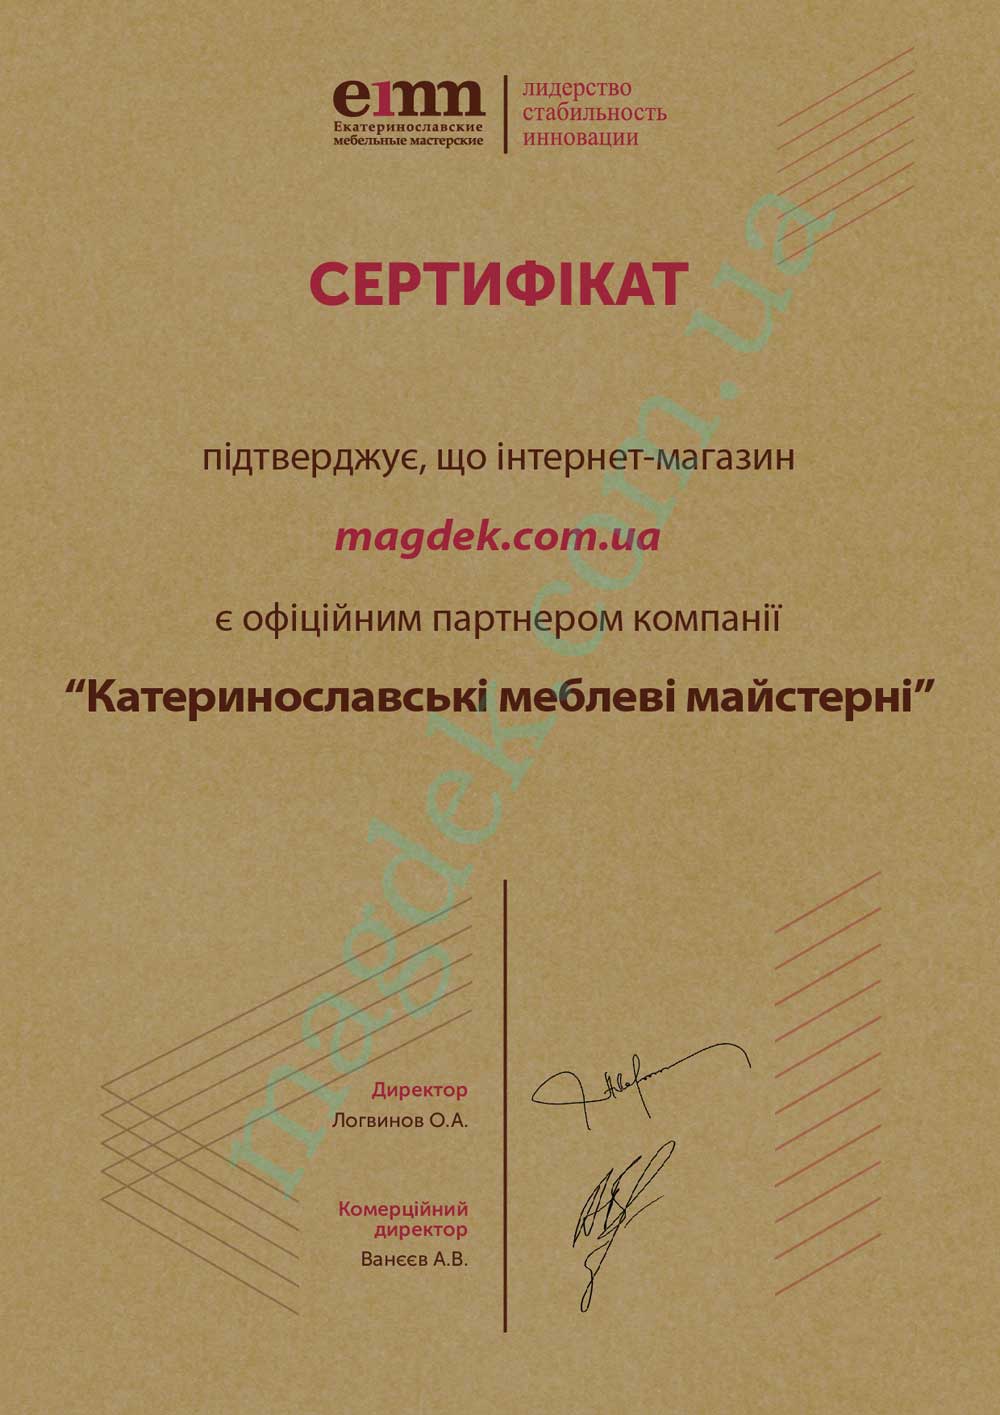 Сертификат диллера